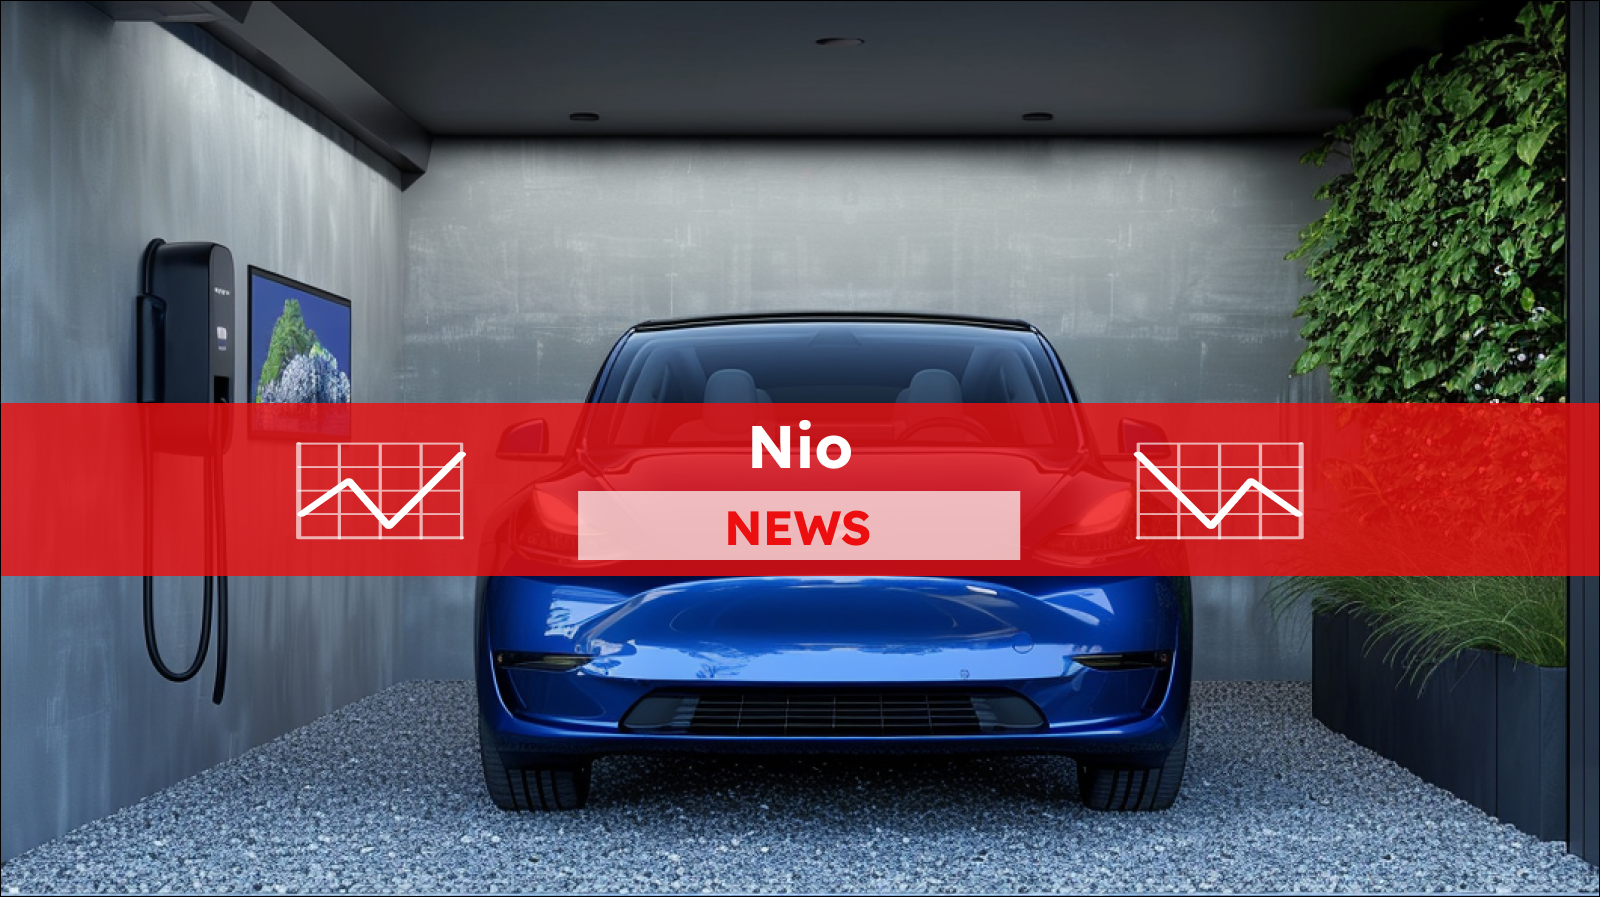 Ein blaues Elektroauto in der modernen Ladestation mit einem szenischen Display an der Wand, mit einem roten NIO NEWS Banner